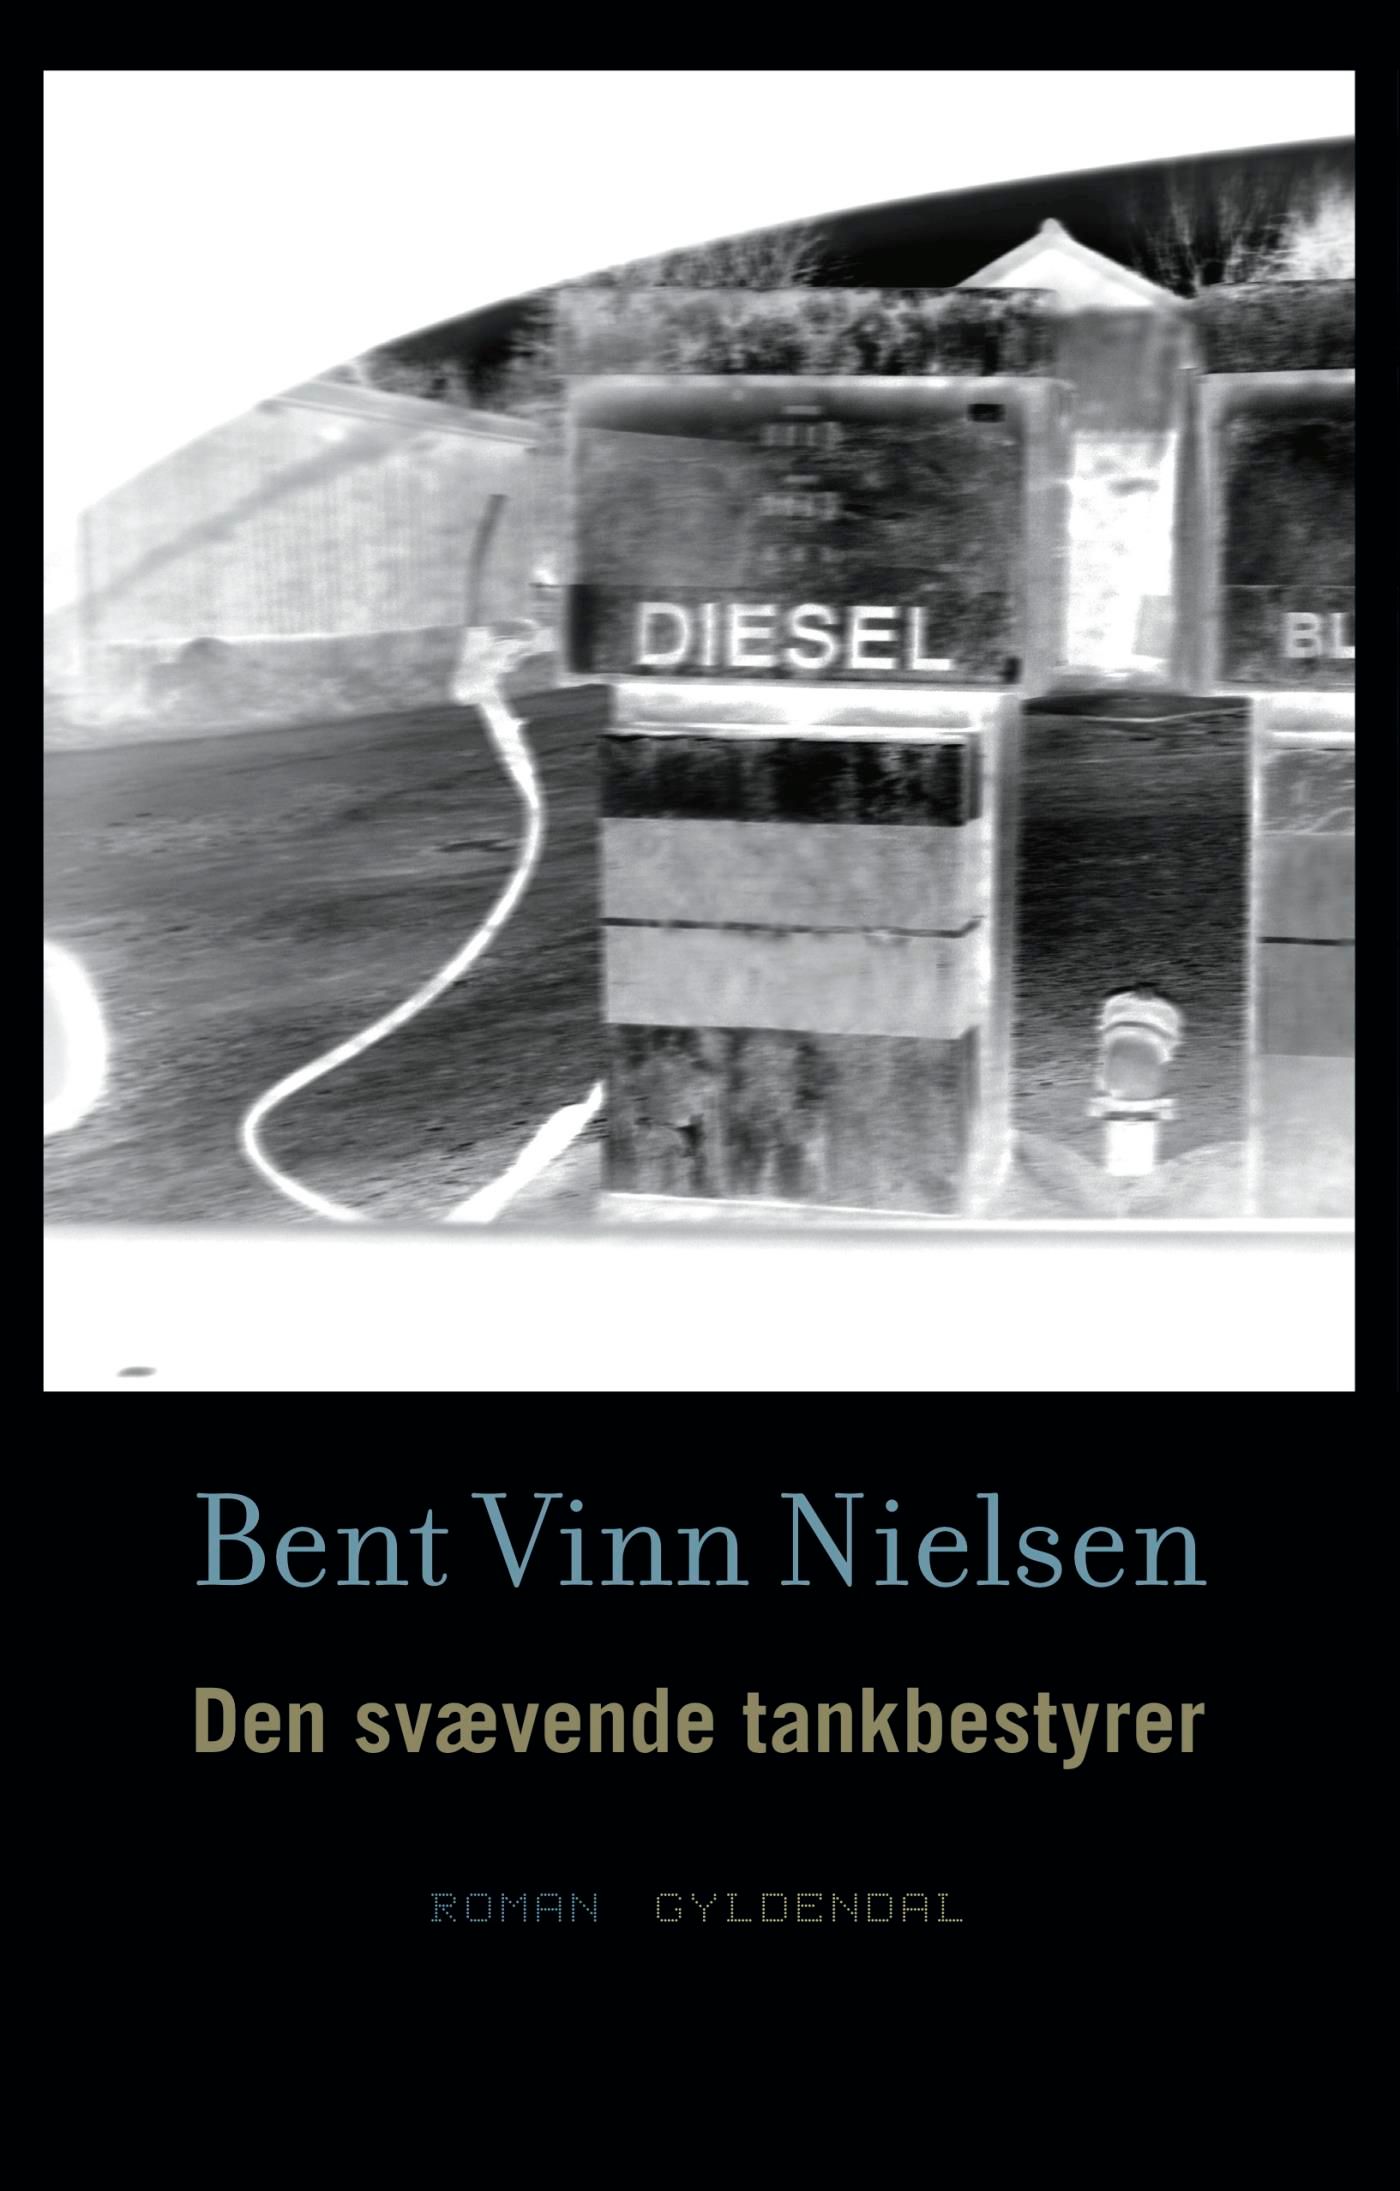 Den svævende tankbestyrer, e-bok av Bent Vinn Nielsen